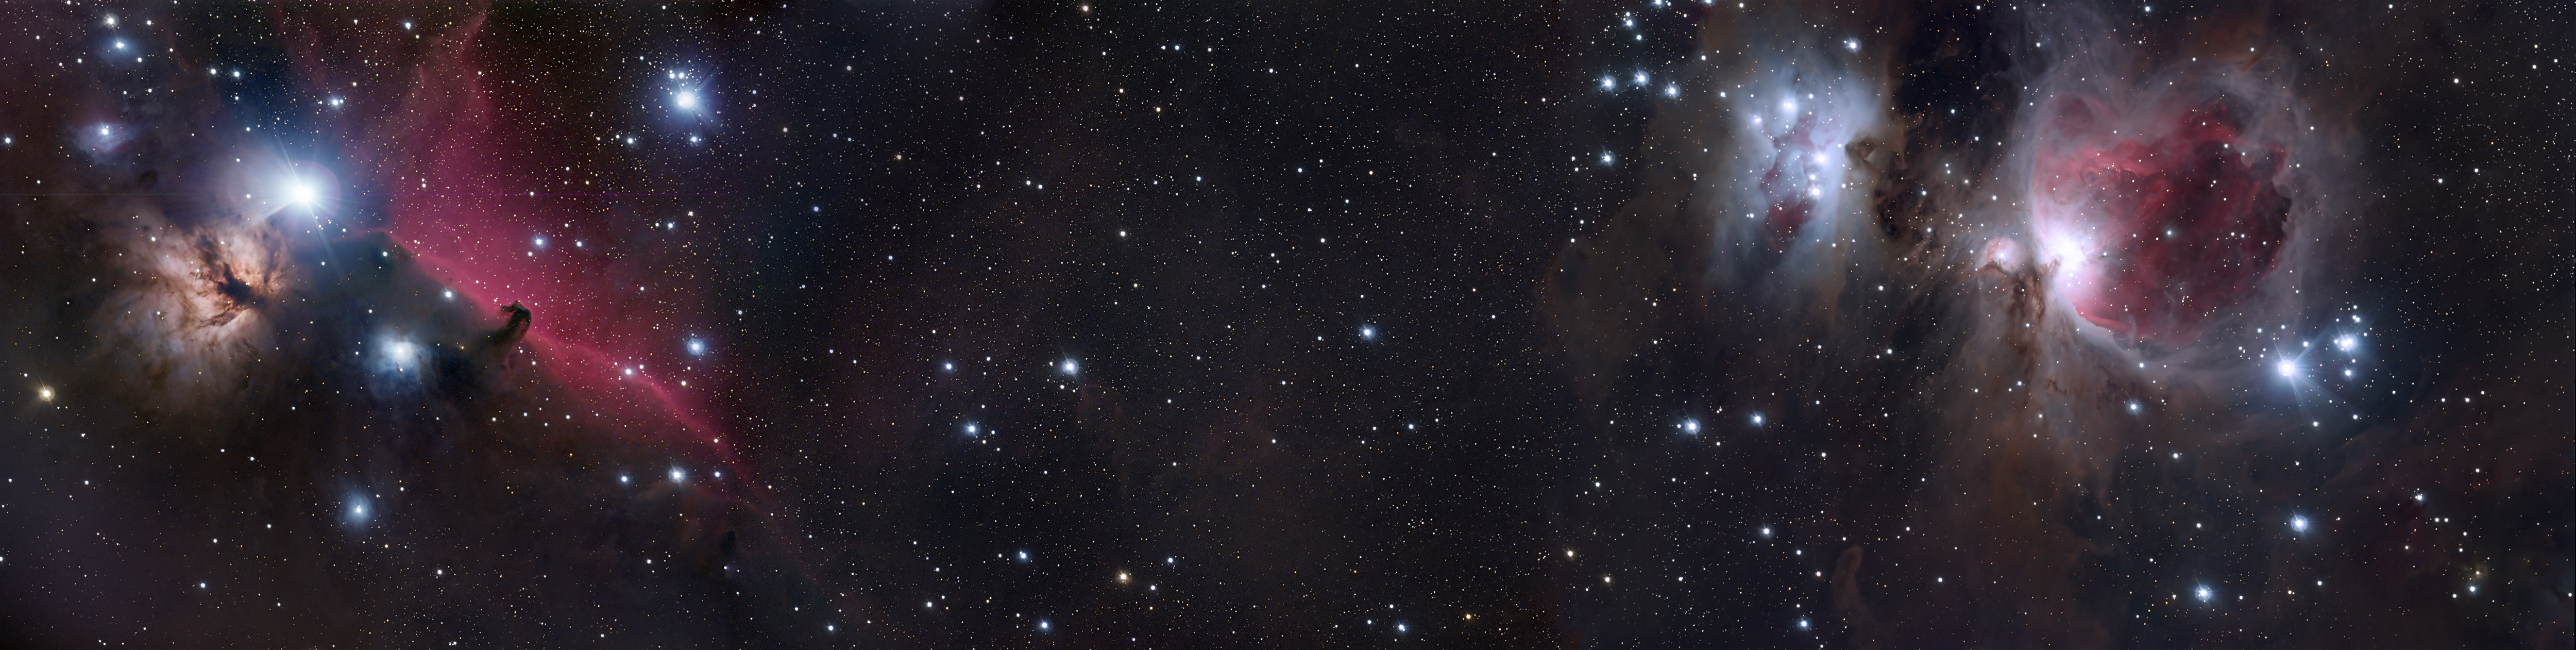 stars, sci fi, nebula, horsehead nebula, orion nebula, space